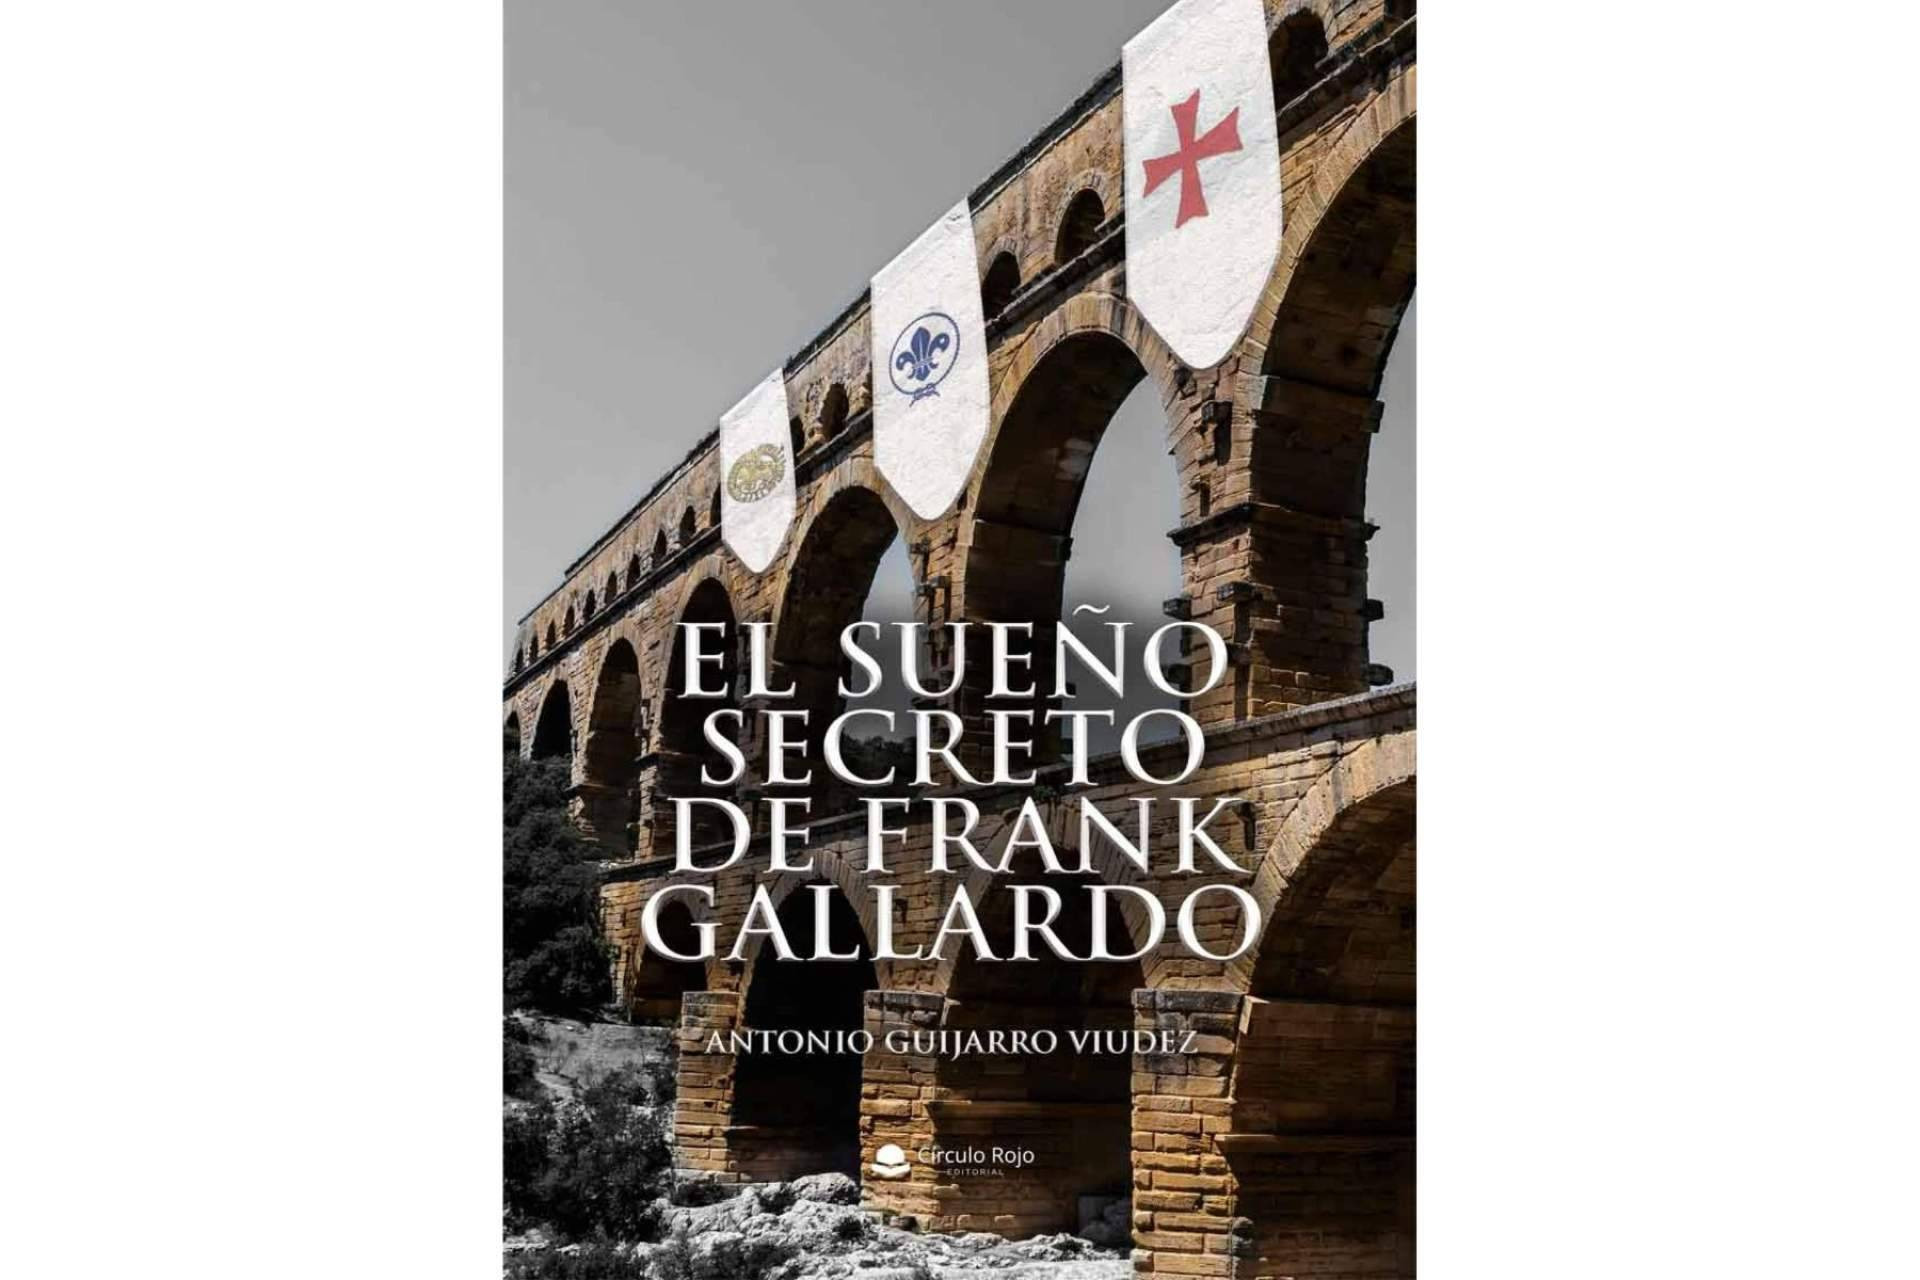  Antonio Guijarro Viudez invita a sus lectores a entrar en el mundo de los sueños a través de su libro ‘El sueño secreto de Frank Gallardo’ 